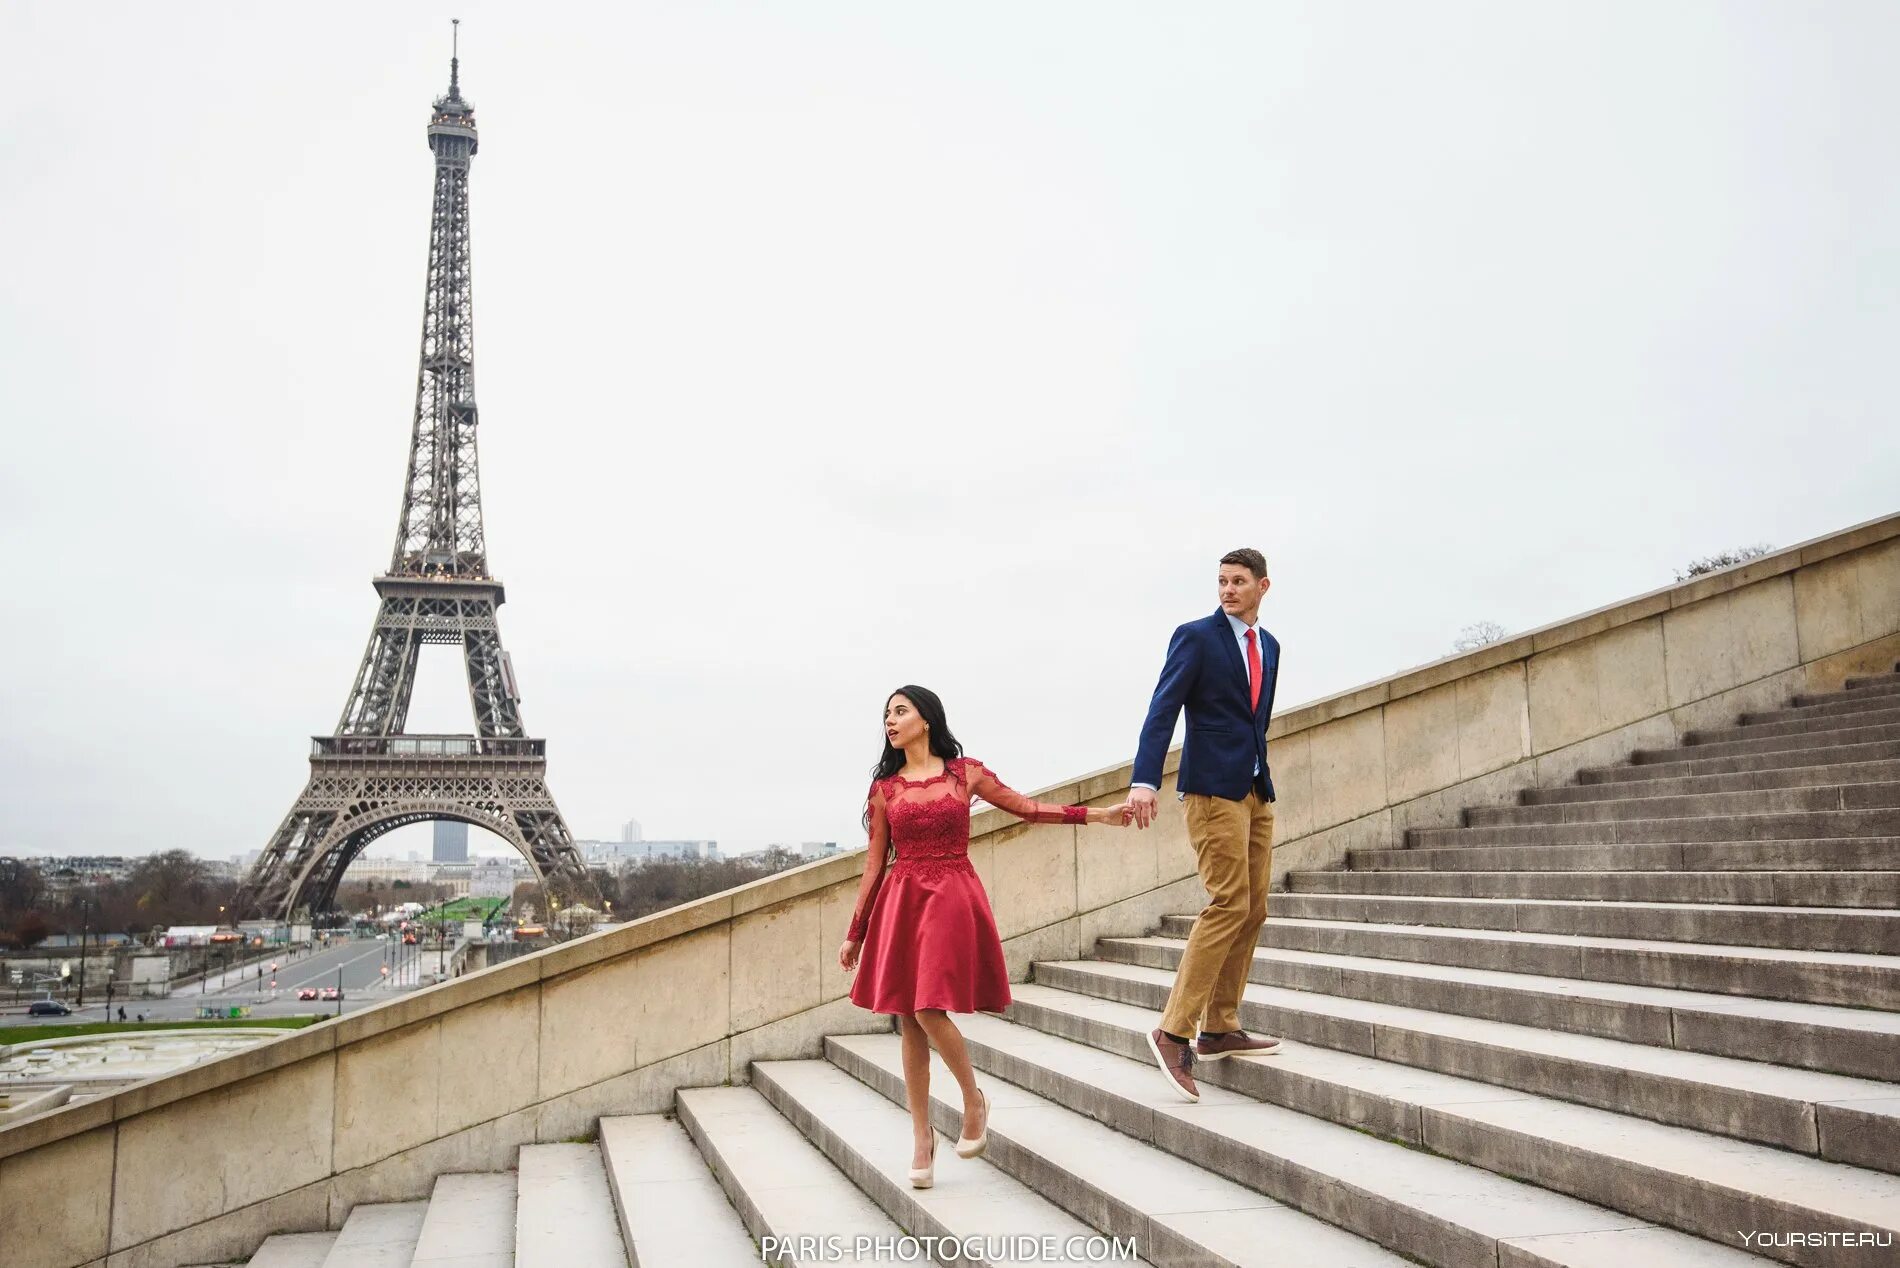 На фоне эльфелевой башни. Фотосессия в Париже. На фоне Эйфелевой башни. Париж люди. Человек на фоне Эйфелевой башни.